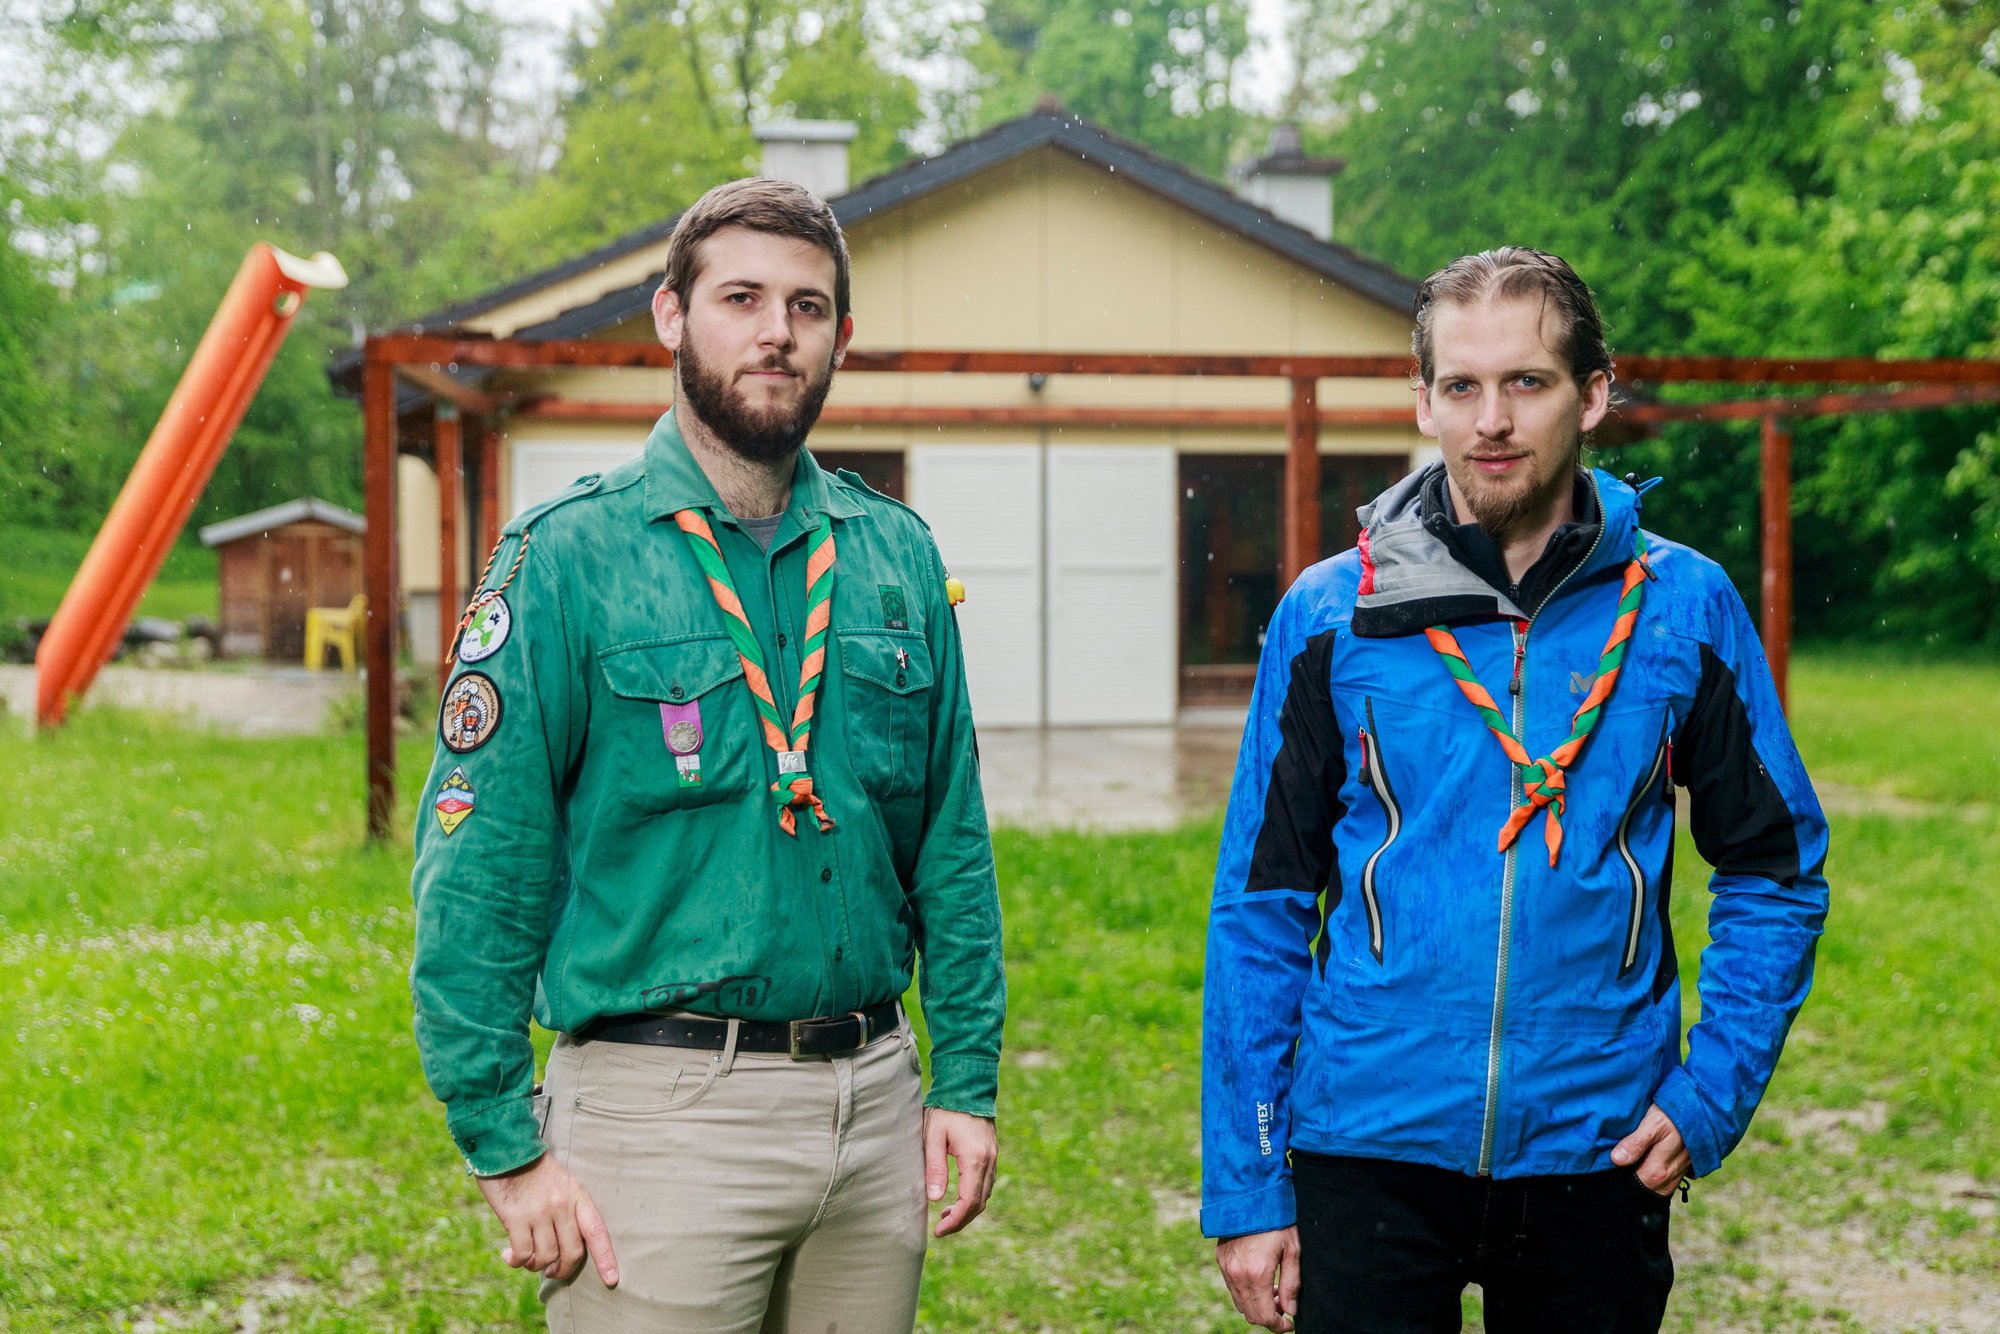 Célien Maret, chef de groupe scout du Noirmont-Gland (à g.), et Mathieu Vibert, président de la fondation qui gère la cabane de la Sardoche à Vich.

© Sigfredo Haro